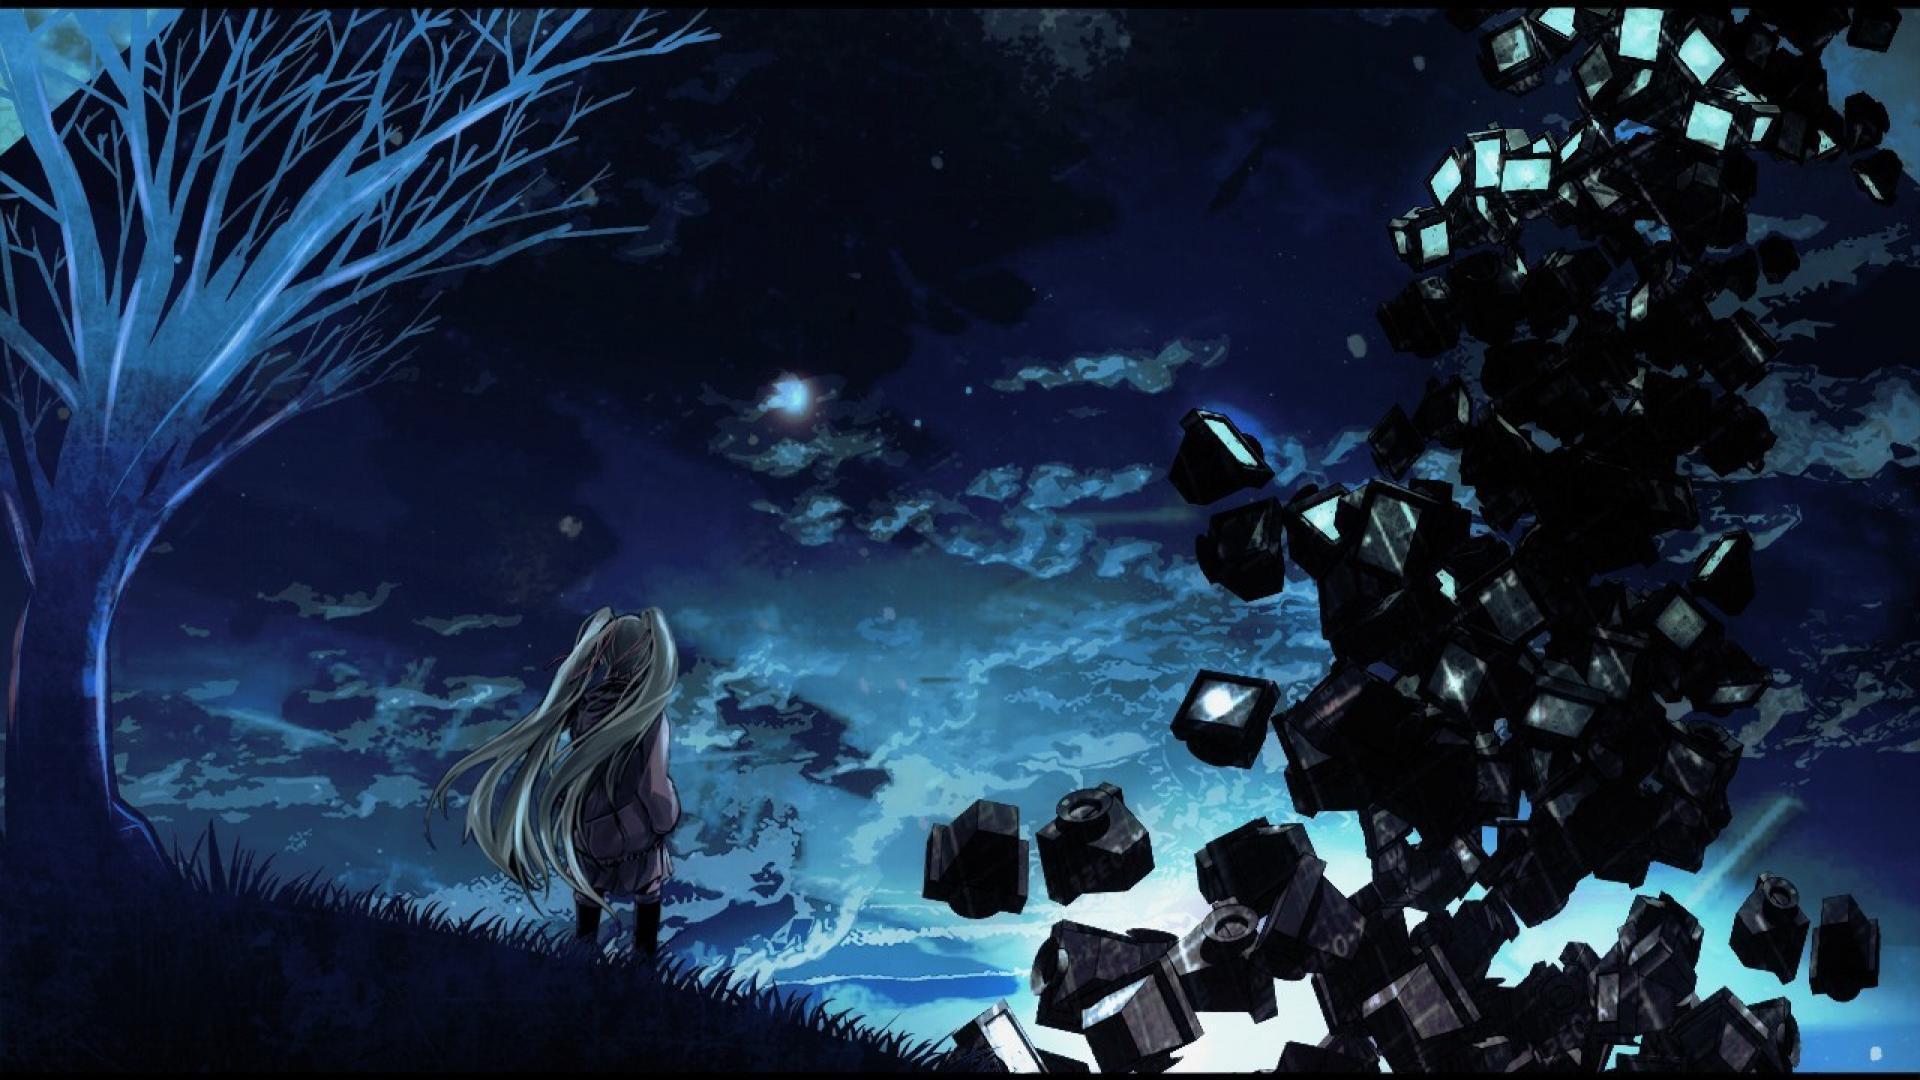 fond d'écran hatsune miku,bleu,l'eau,ciel,oeuvre de cg,nuit